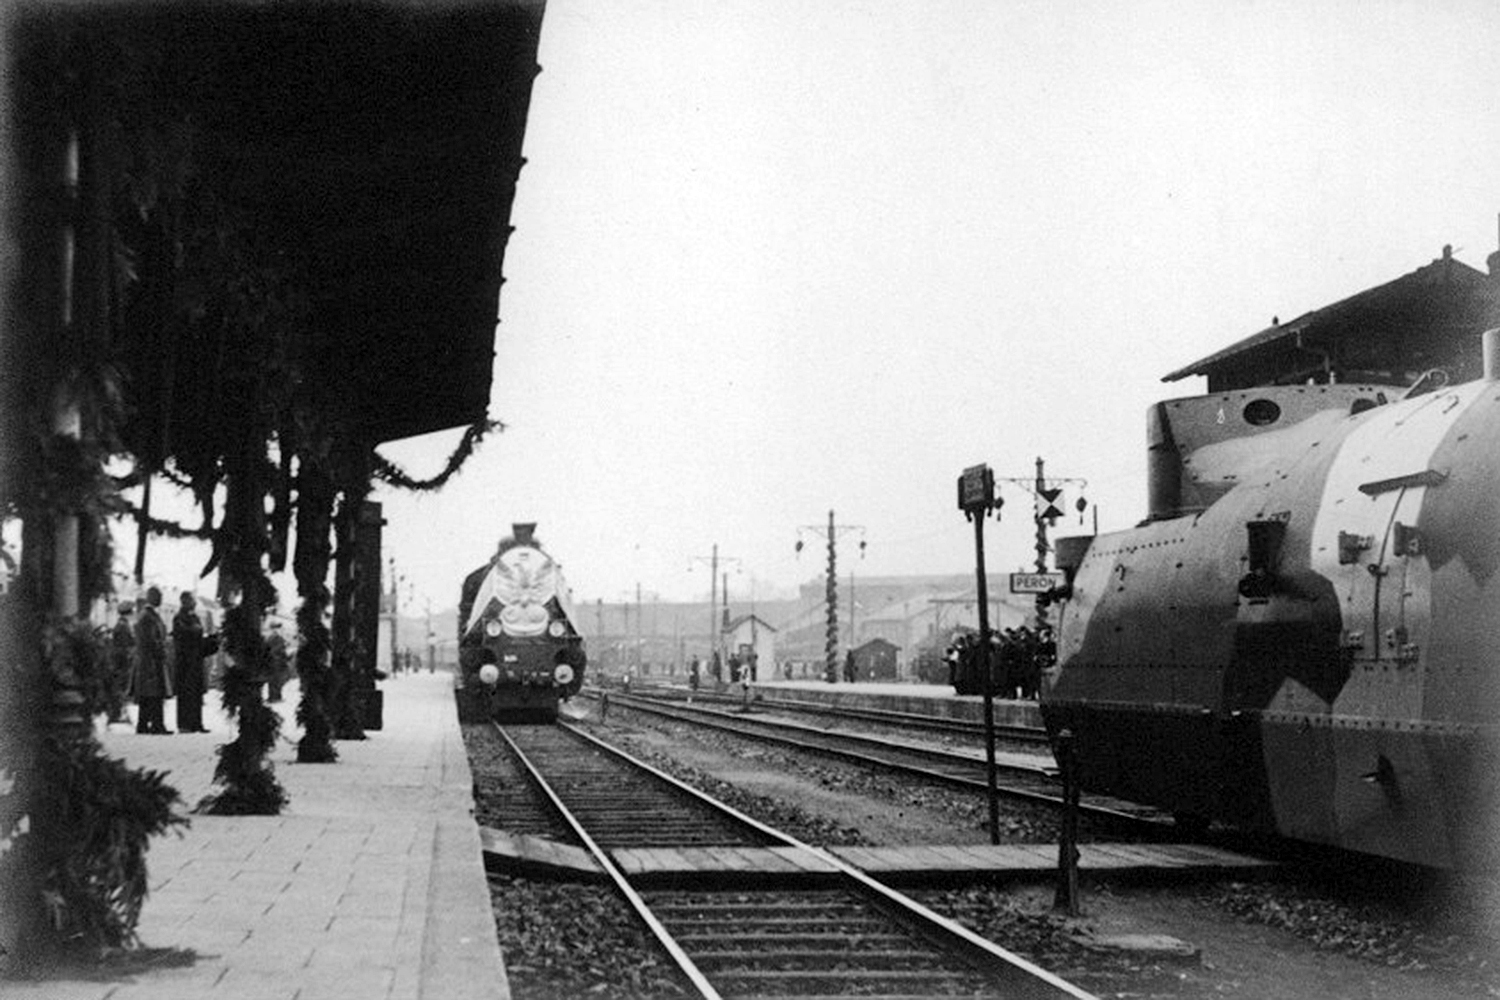 17 maja 1935 roku z Warszawy do Krakowa wyruszył specjalny pociąg przewożący trumnę z Józefem Piłsudskim do Krakowa. Podróż trwała całą noc. Parowóz, który ciągnął skład pochodził ze skarżyskiej lokomotywowni i był prowadzony przez maszynistów ze Skarżyska / źródło: Narodowe Archiwum Cyfrowe